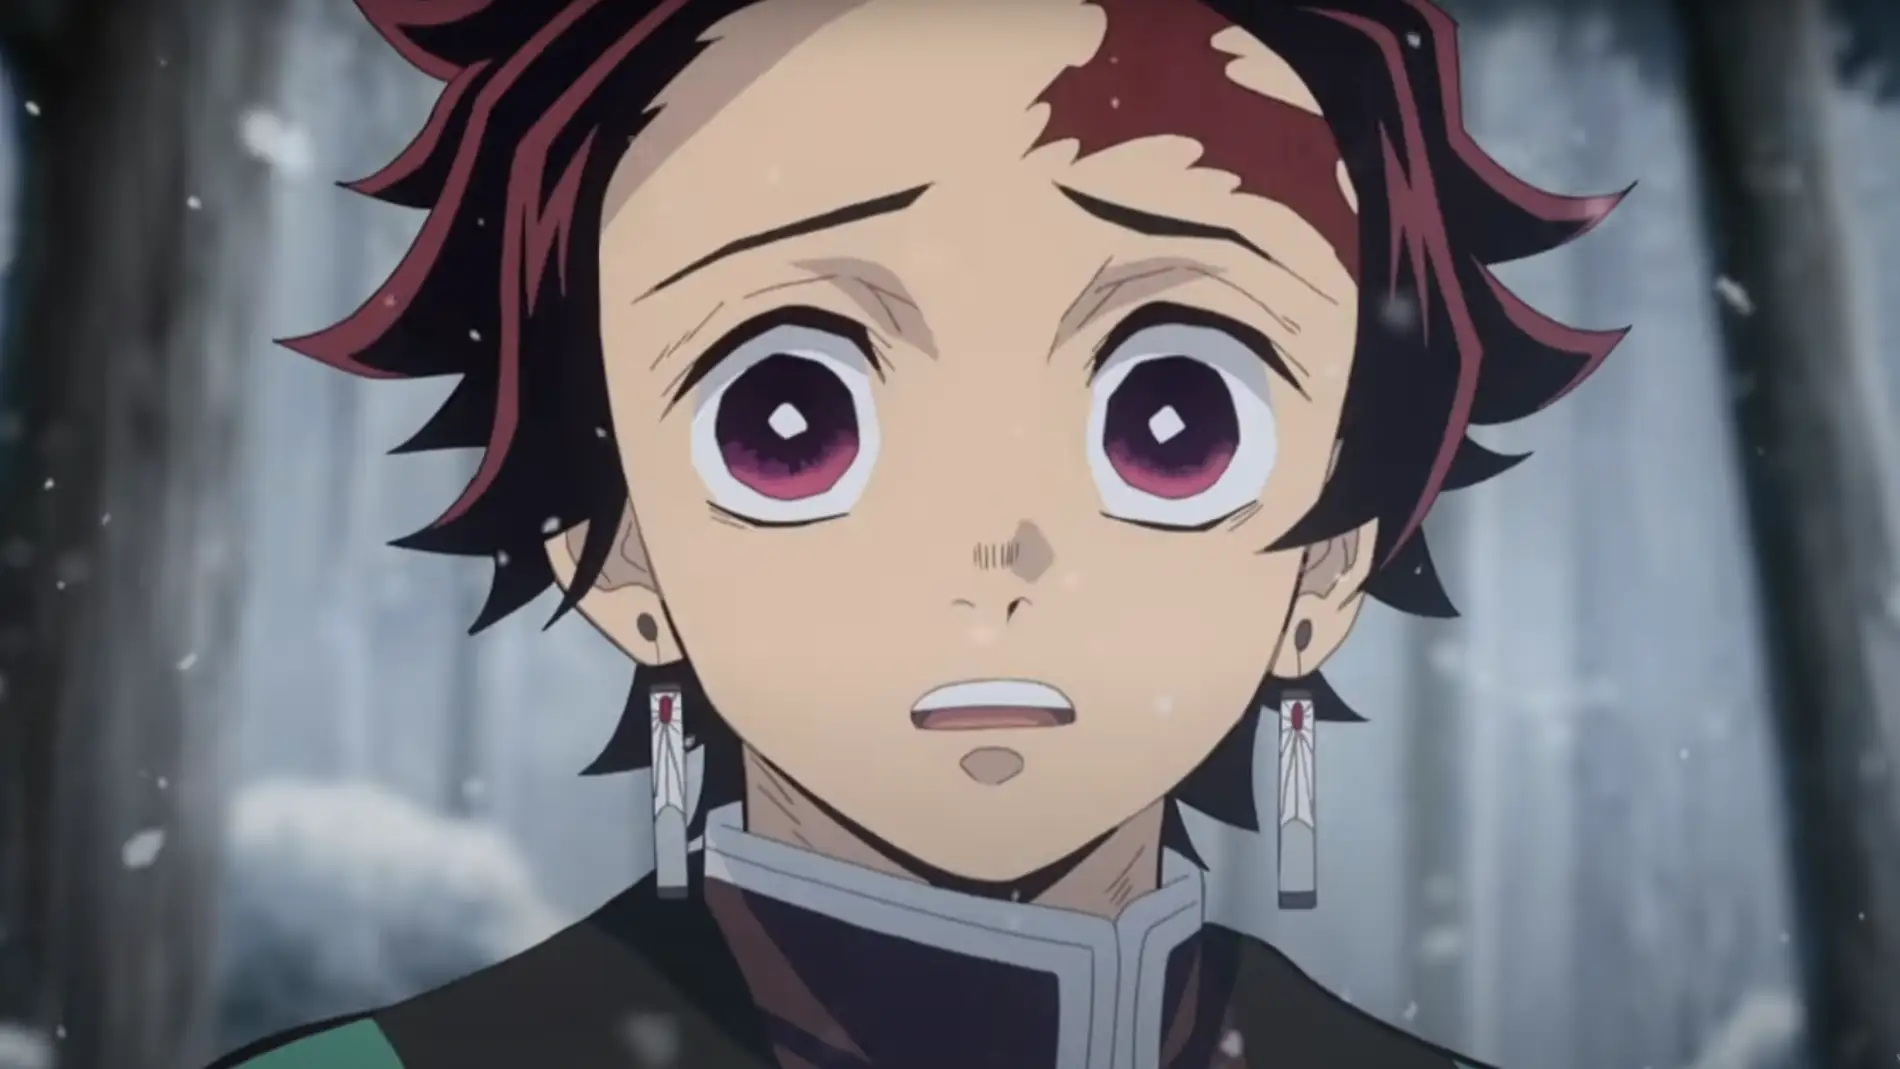 Por qué los personajes de anime tienen los ojos tan grandes y redondos?